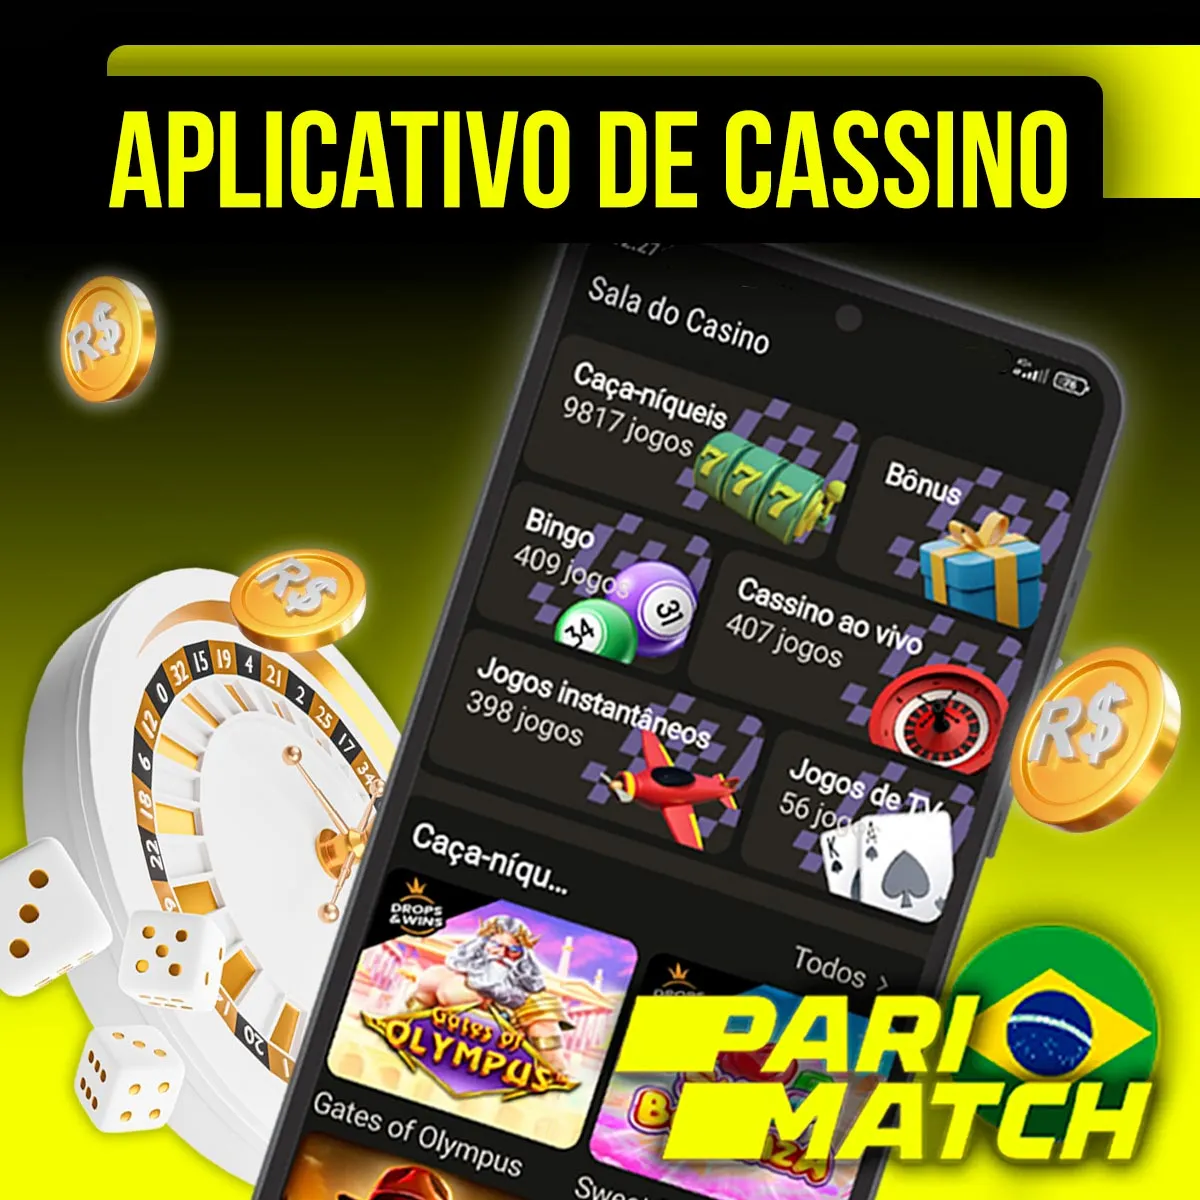 Cassino no aplicativo móvel Android da casa de apostas Parimatch no BrasilCassino no aplicativo móvel Android da casa de apostas Parimatch no Brasil